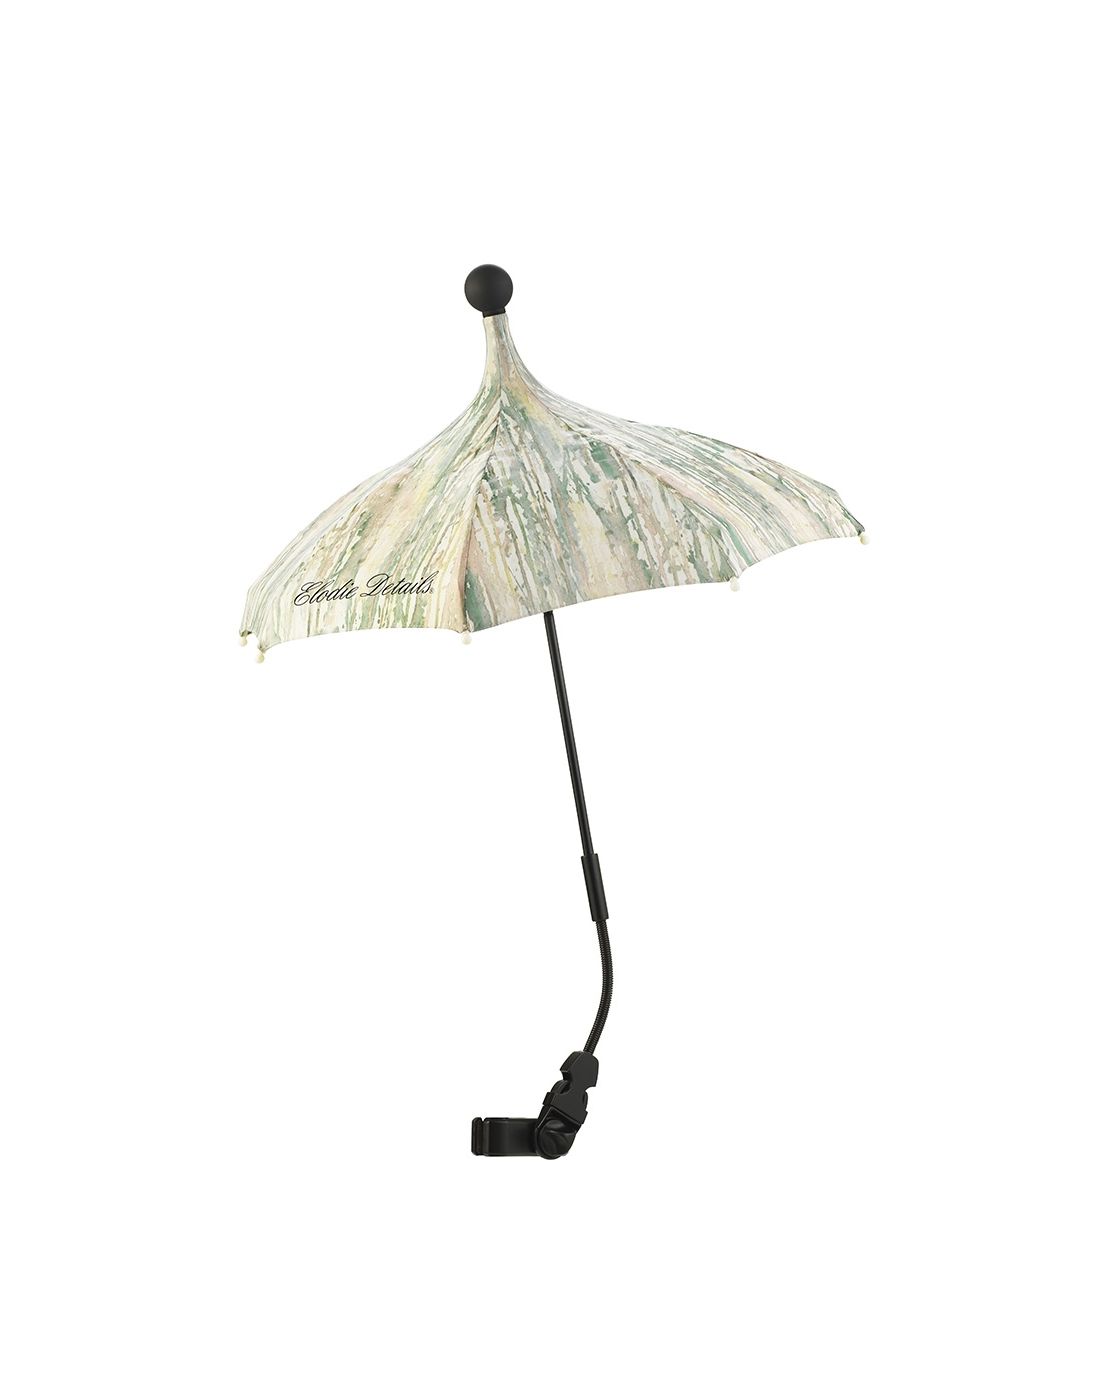 Elodie Details Kids Stroller Umbrella Unicorn Rain